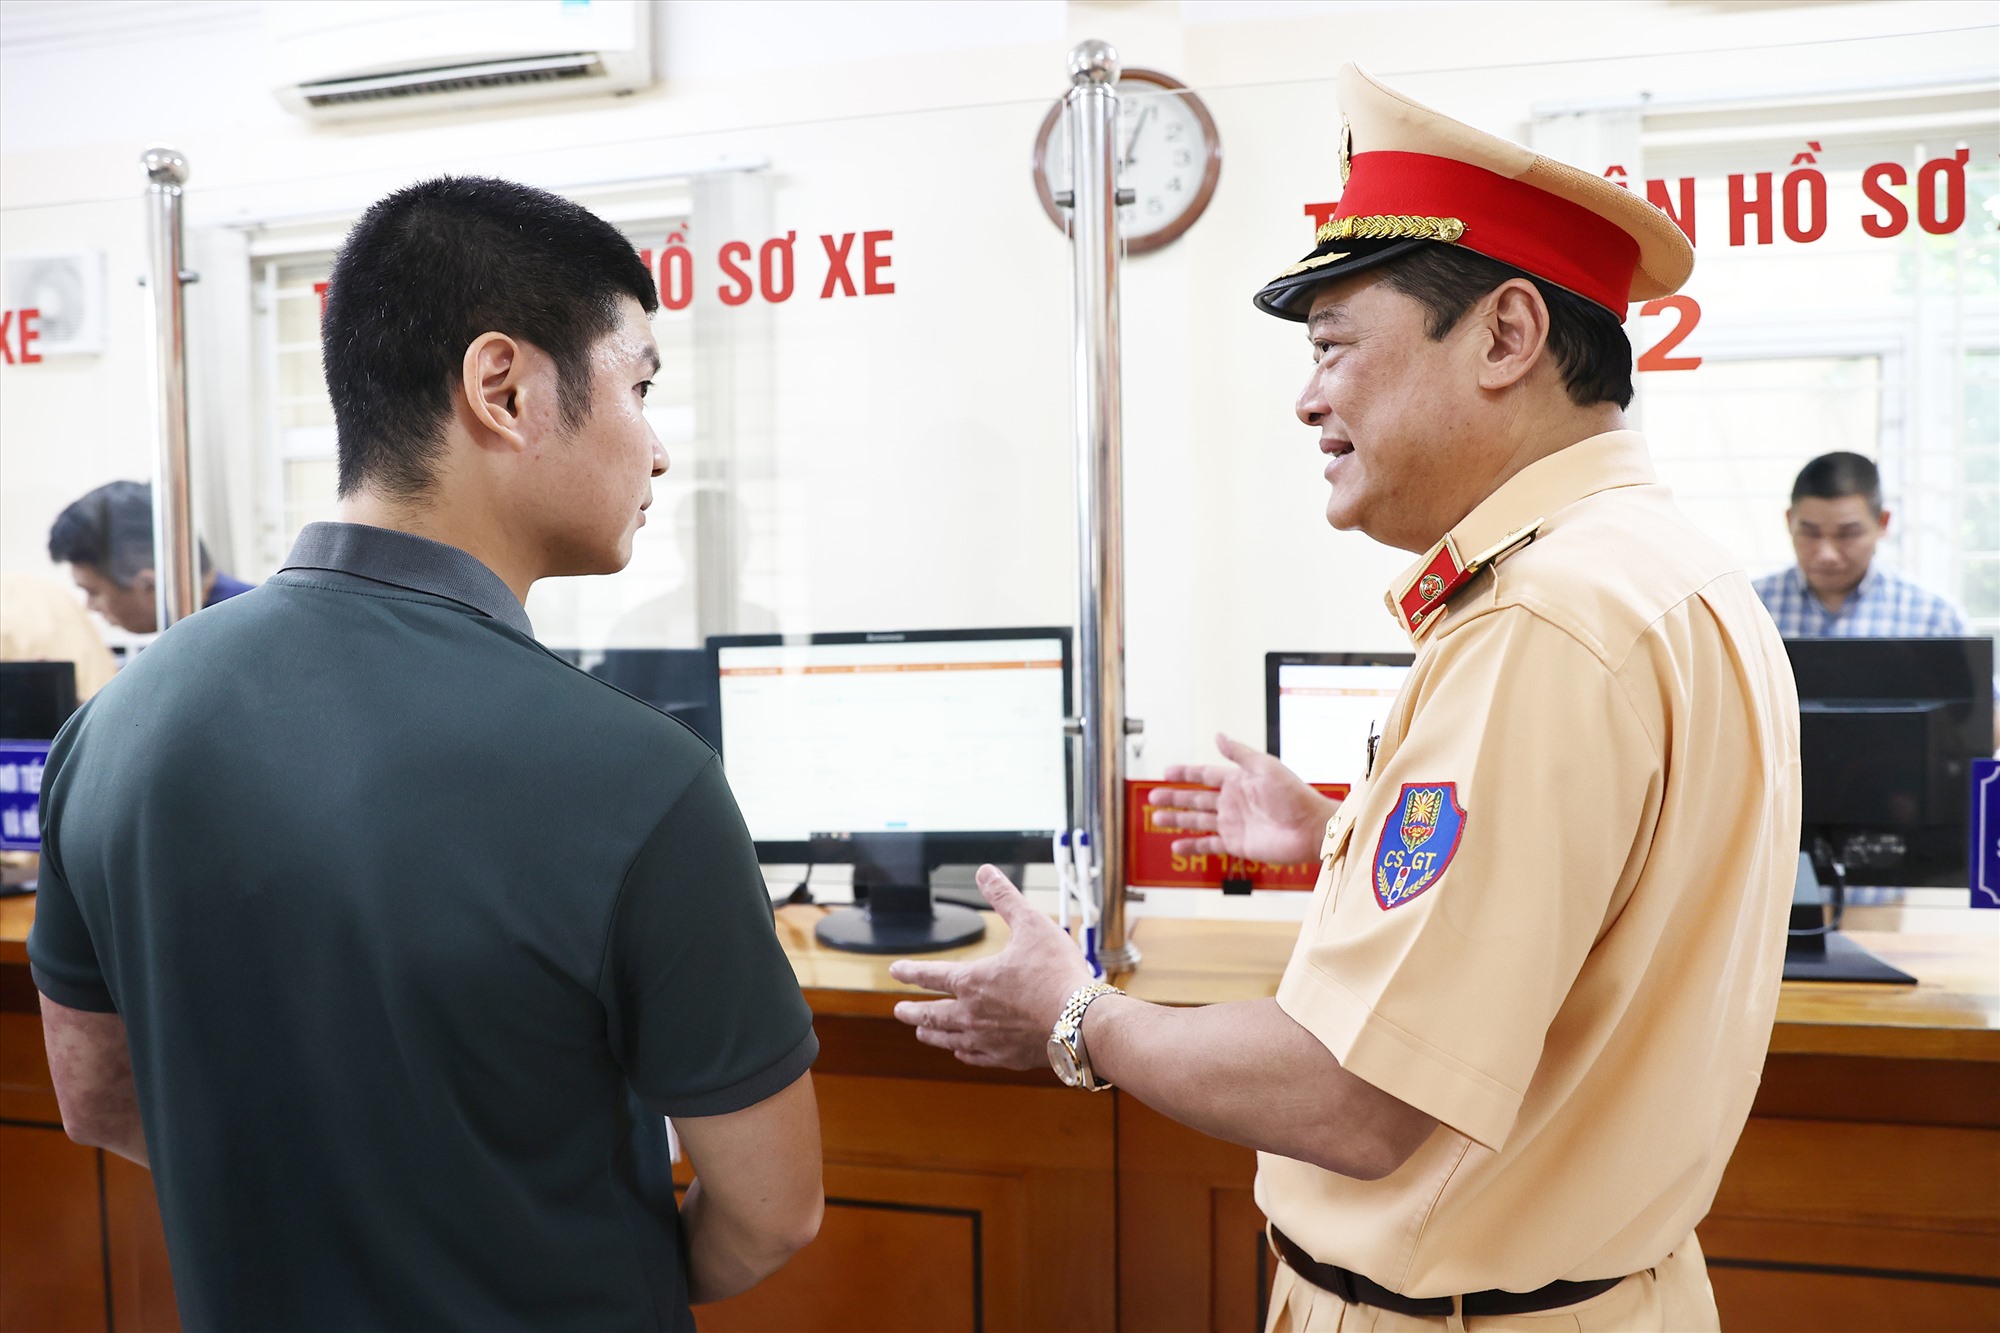 Thiếu tướng Lê Xuân Đức - Phó Cục trưởng Cục Cảnh sát giao thông đã đến kiểm tra, đôn đốc các cơ sở đăng ký xe trên địa bàn Hà Nội hỗ trợ người dân làm thủ tục.